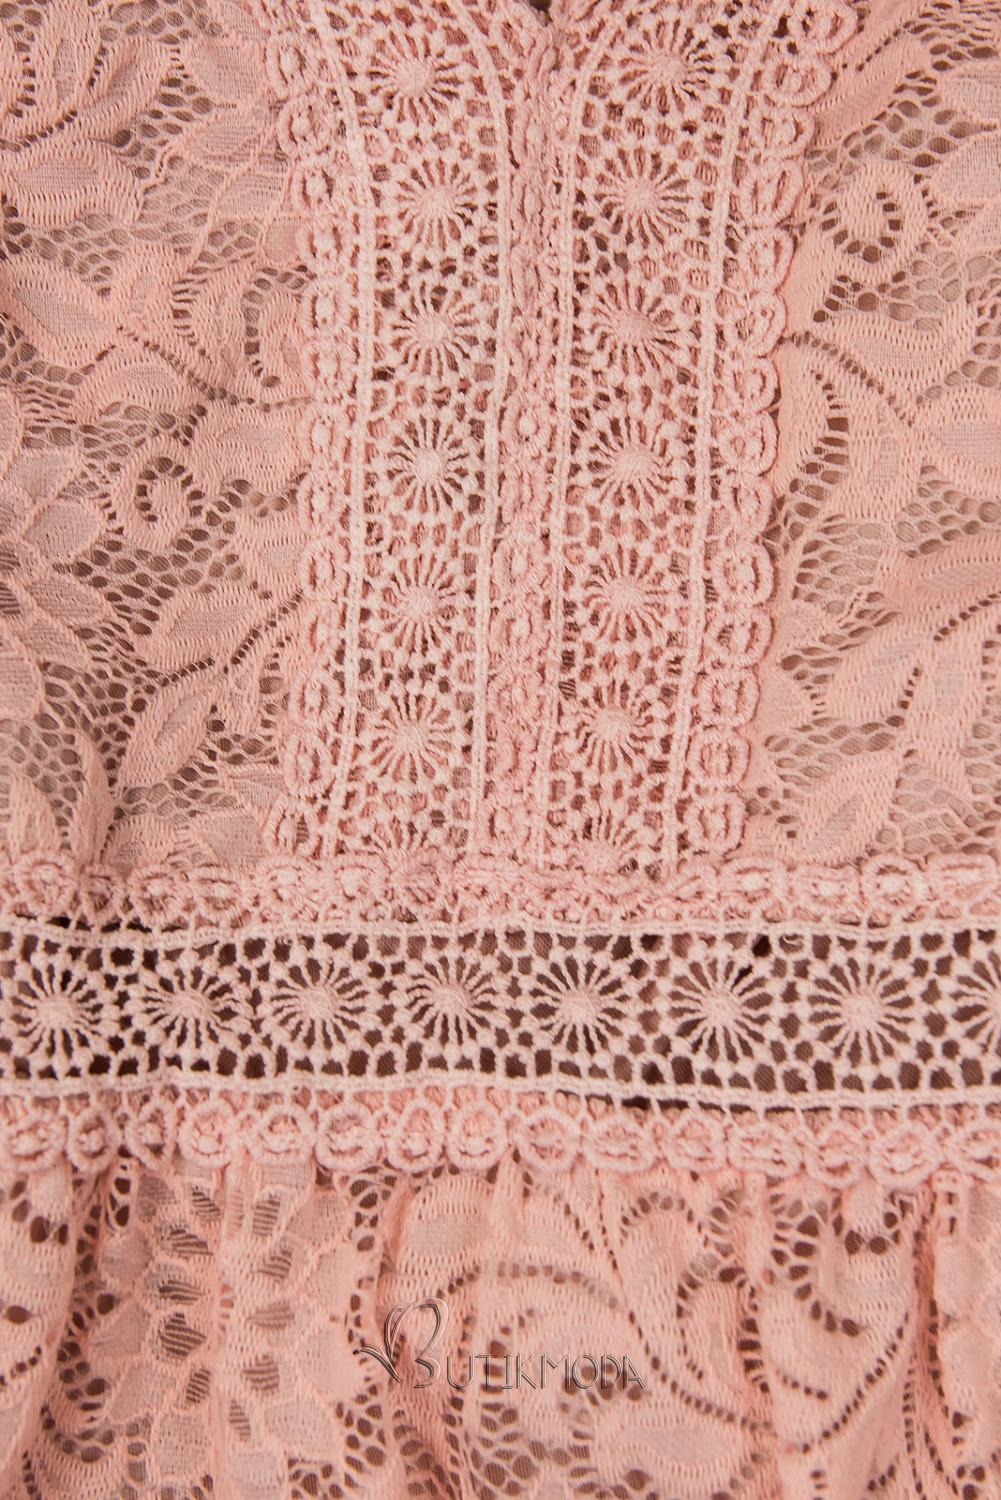 Rózsaszínű elegáns csipke ruha